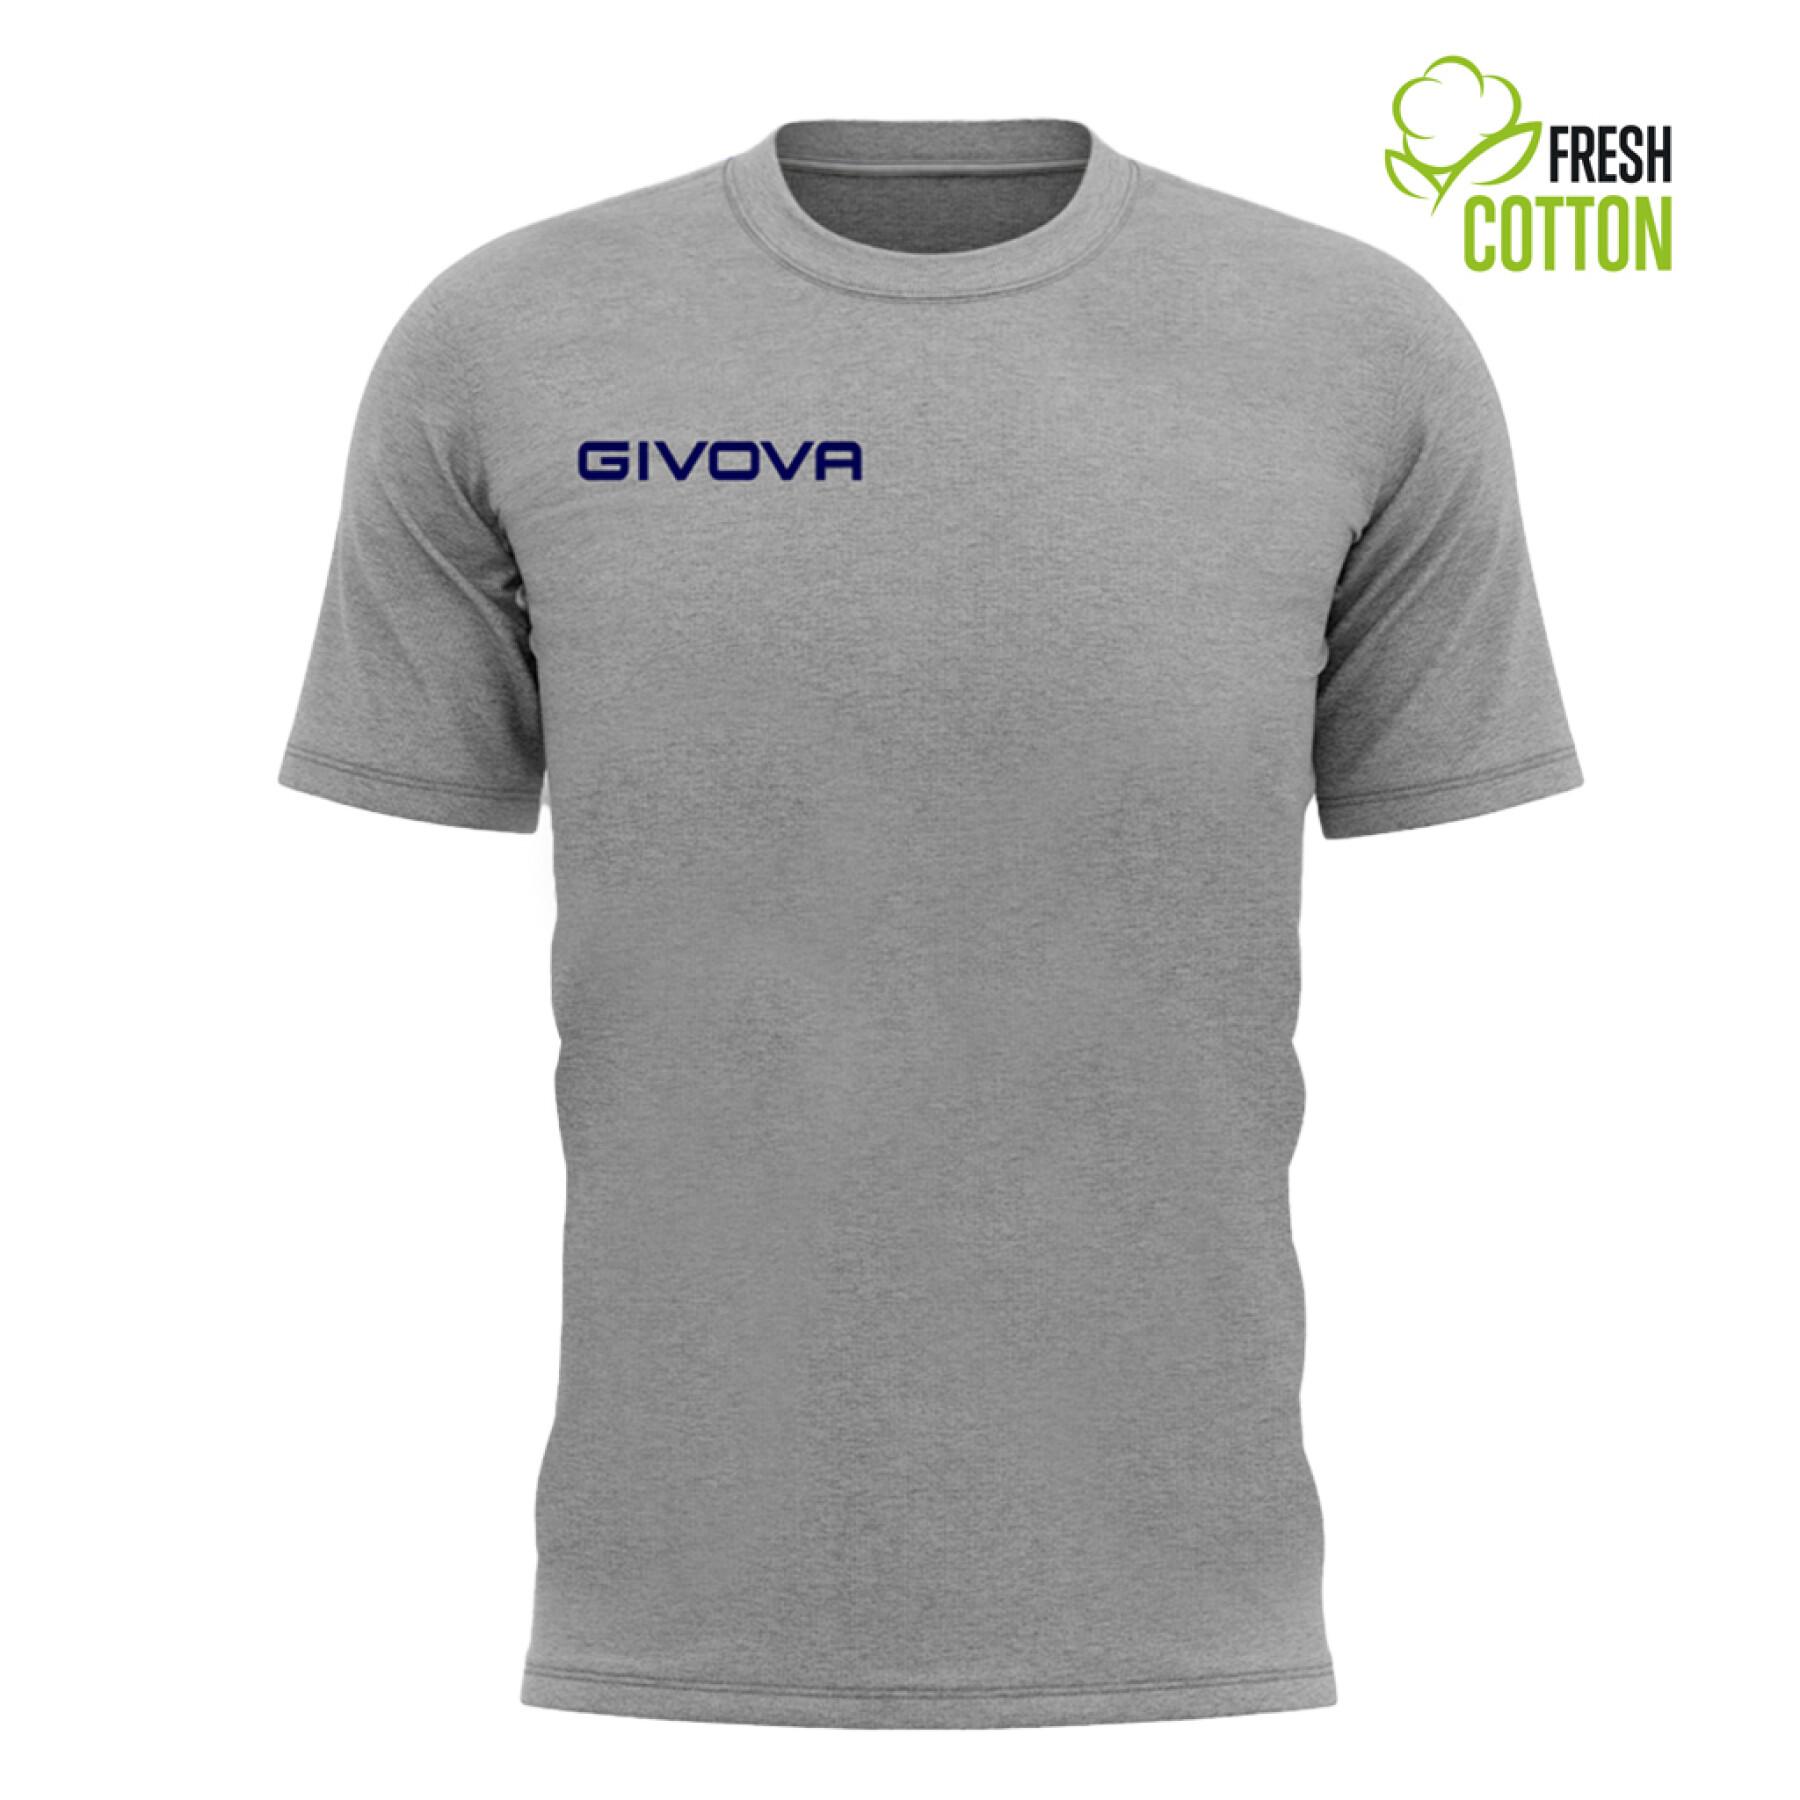 T-shirt cotton child Givova Fresh